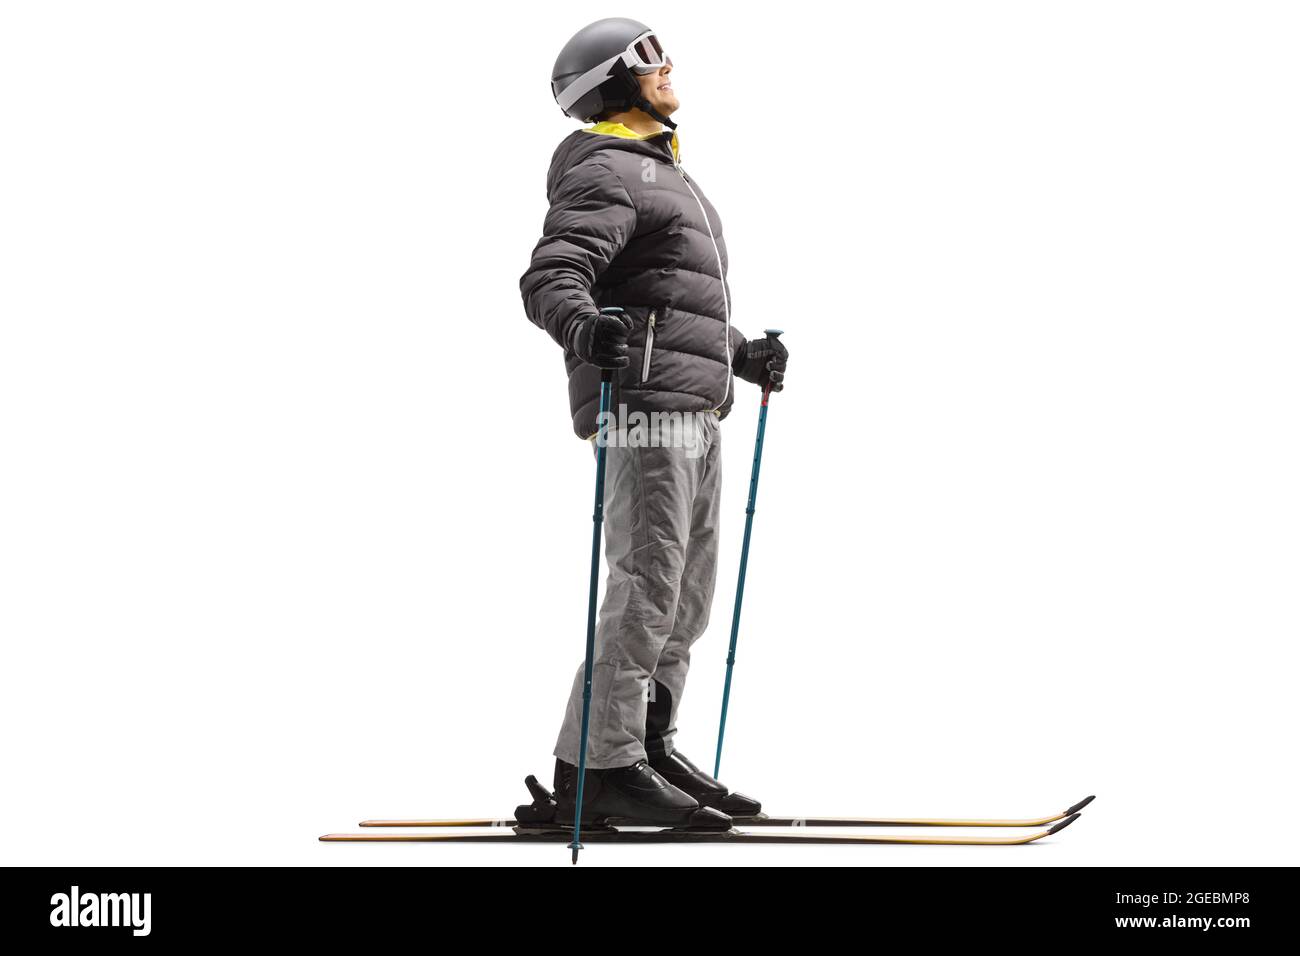 Ganzkörperaufnahme eines Mannes in Skijacke, Skischuhen und Helm mit einem Paar Ski, isoliert auf weißem Hintergrund Stockfoto